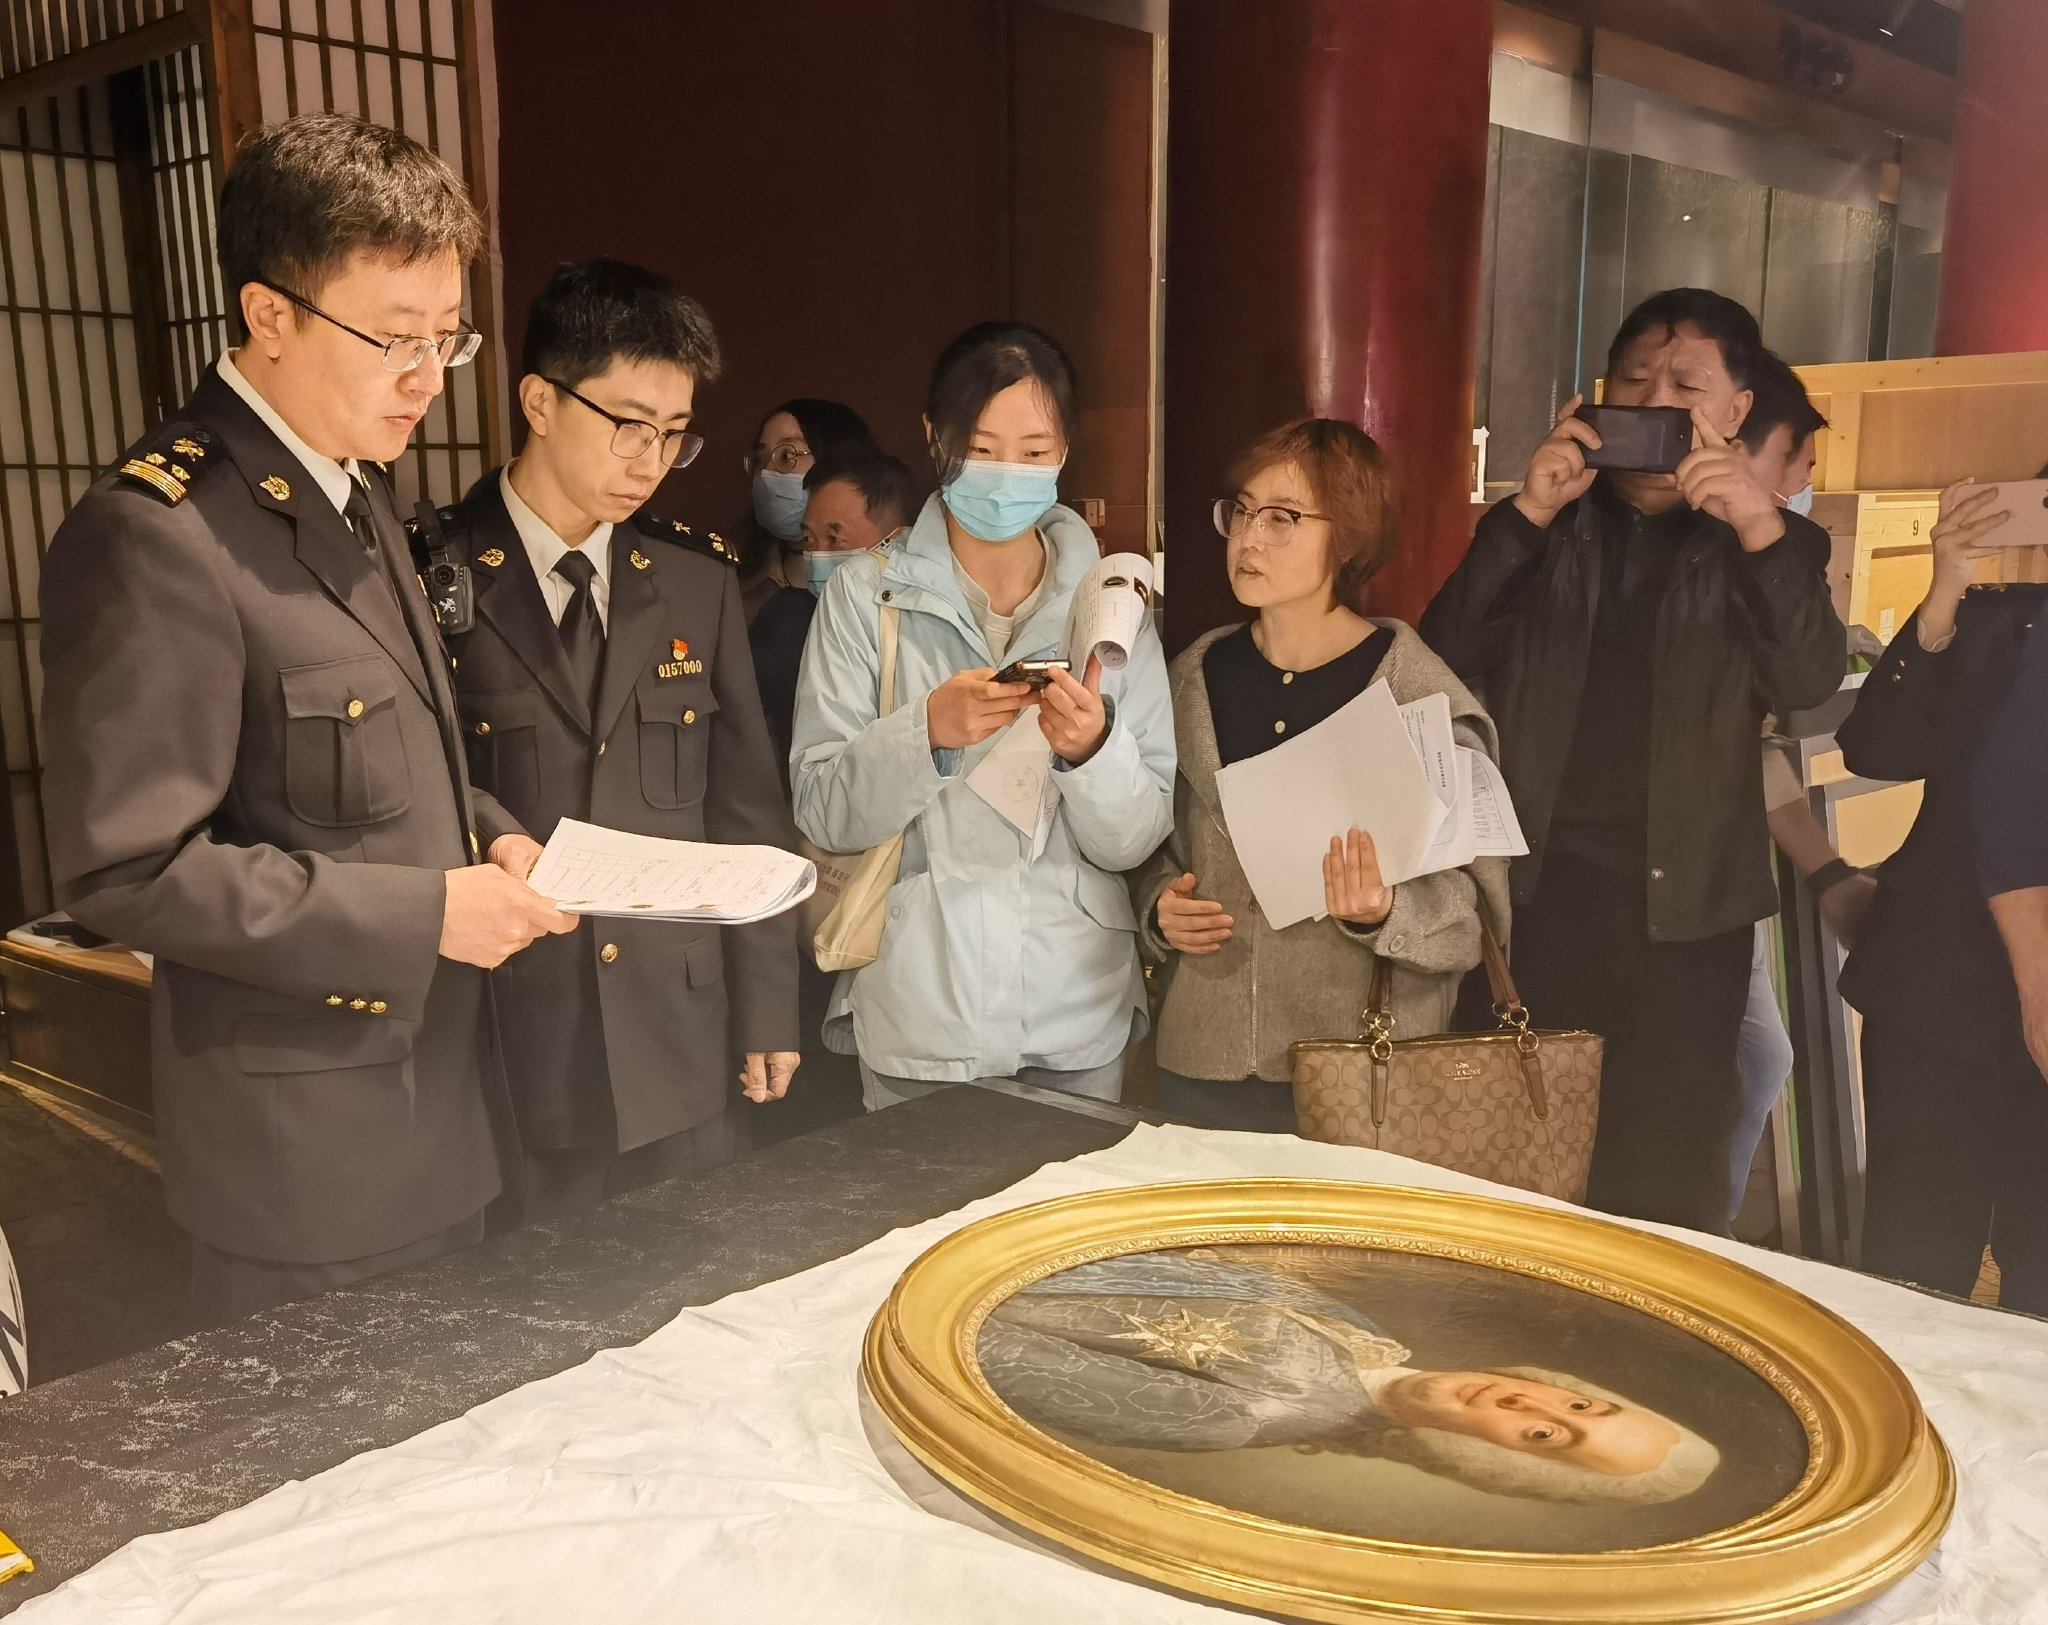 北京會展中心海關關員對參展文物展開監管。關靖喆 攝